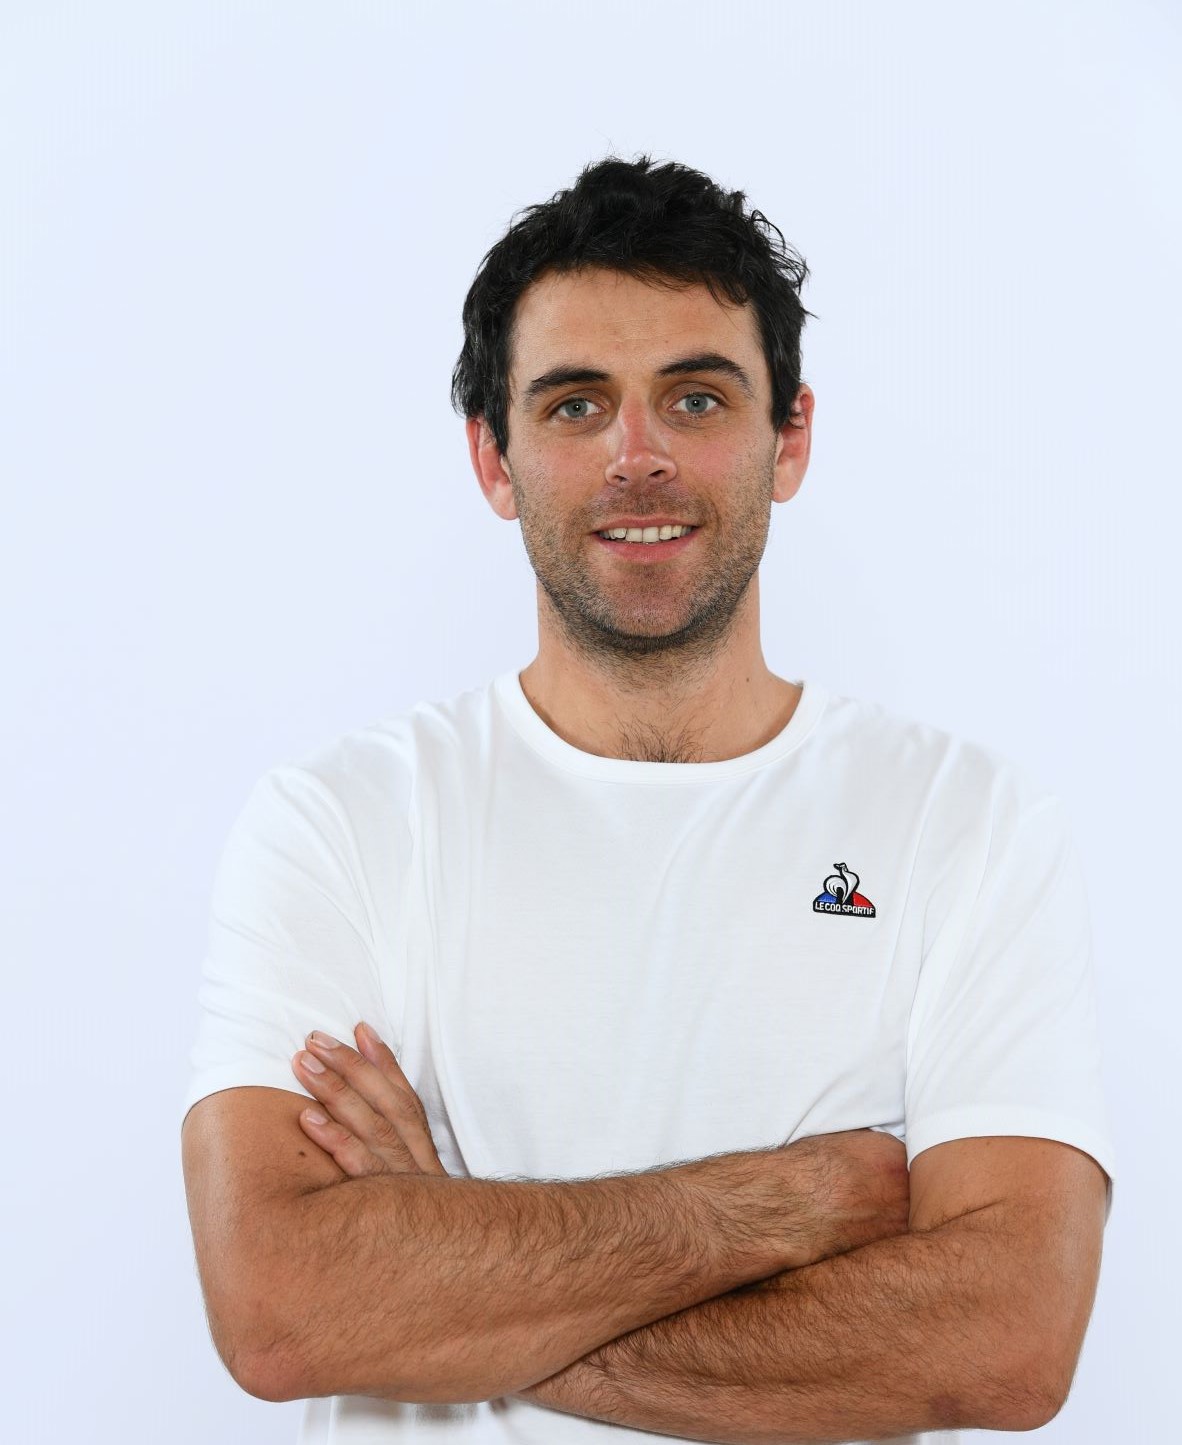 Bastien Midol, skicross, portrait